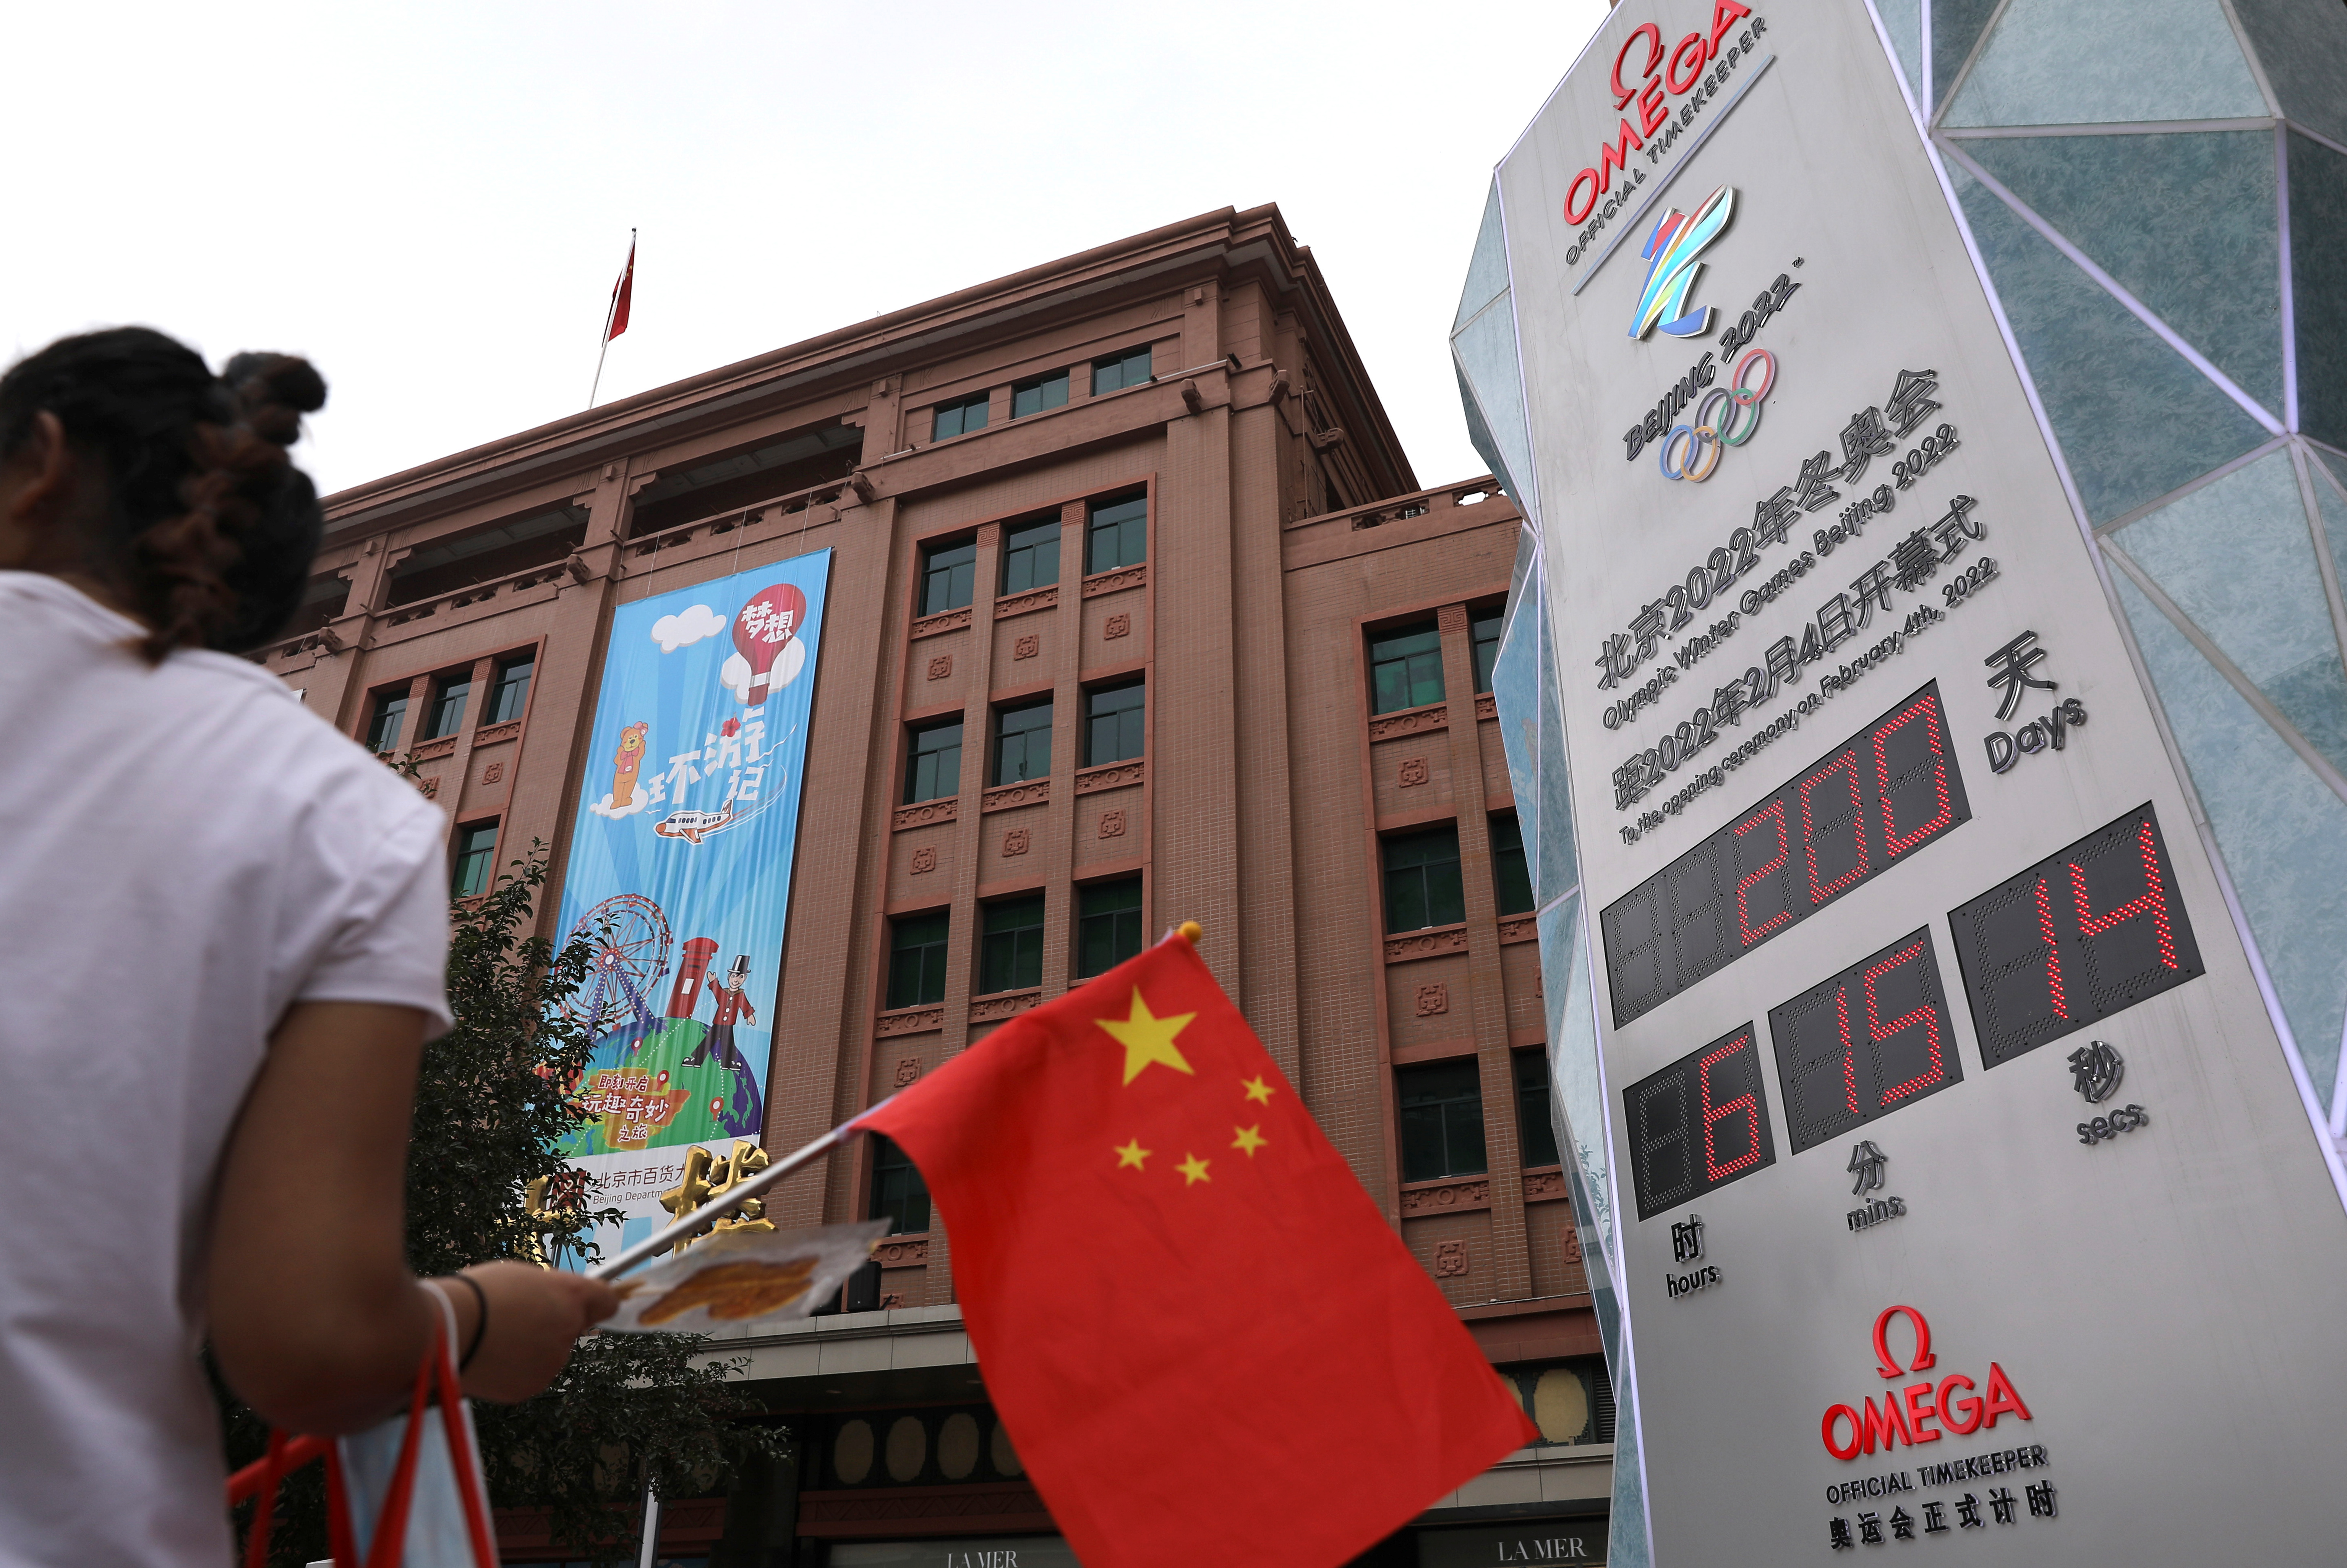 Countdown clock shows 200 days to Beijing 2022 Winter Olympics, in Beijing